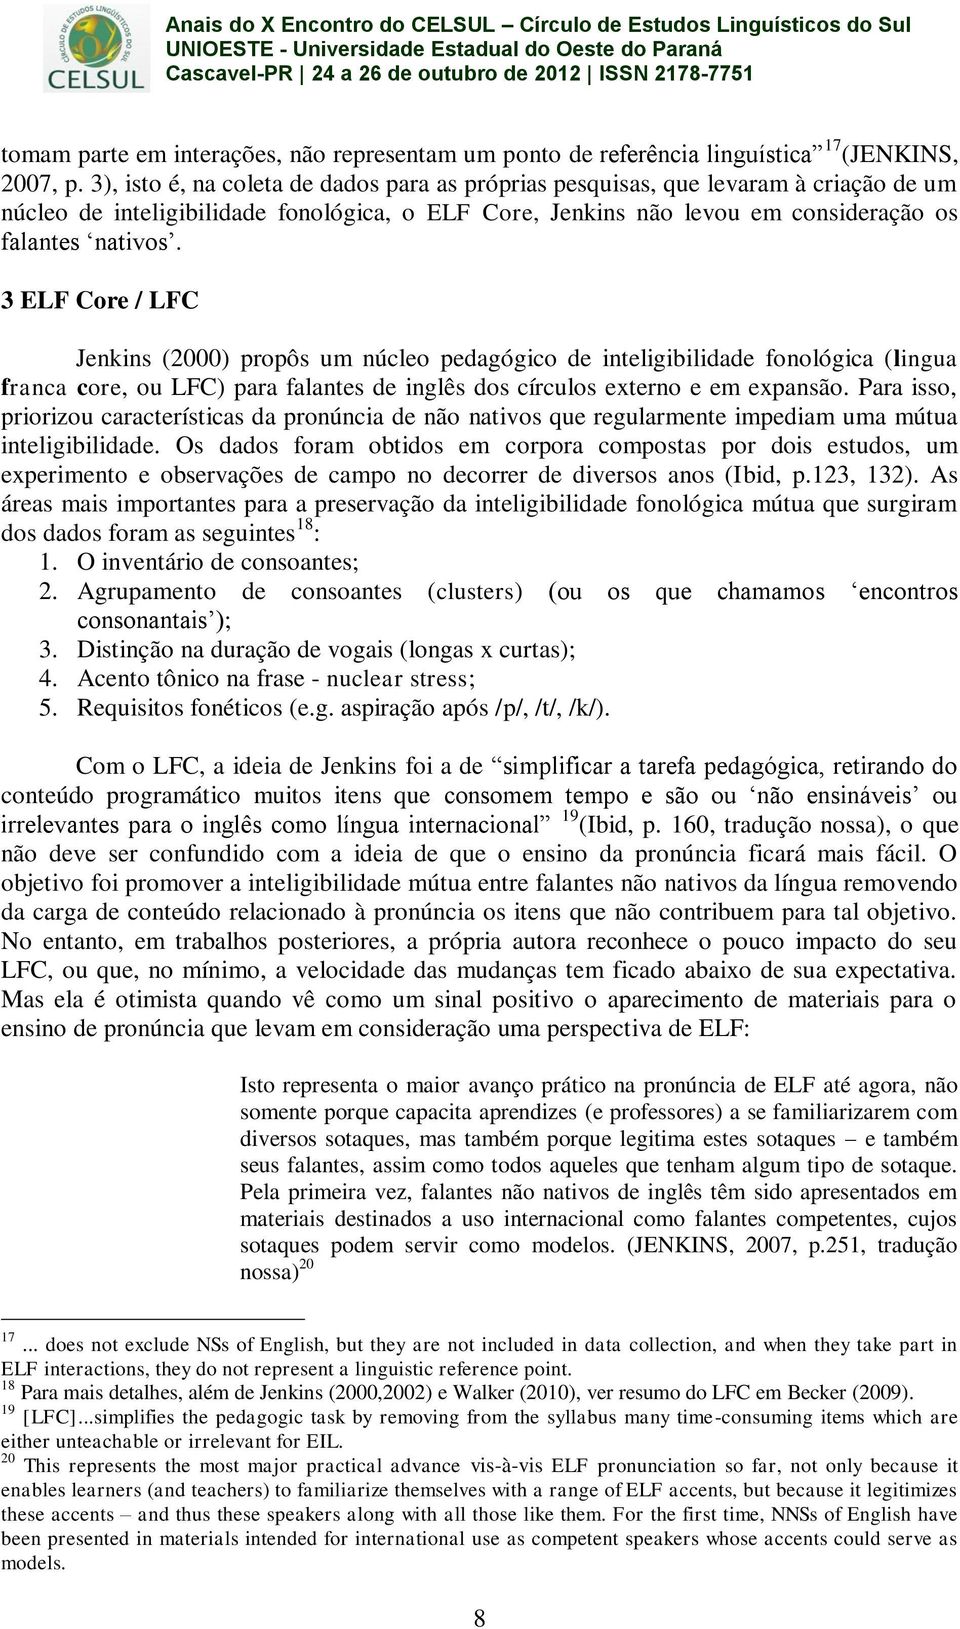 3 ELF Core / LFC Jenkins (2000) propôs um núcleo pedagógico de inteligibilidade fonológica (lingua franca core, ou LFC) para falantes de inglês dos círculos externo e em expansão.